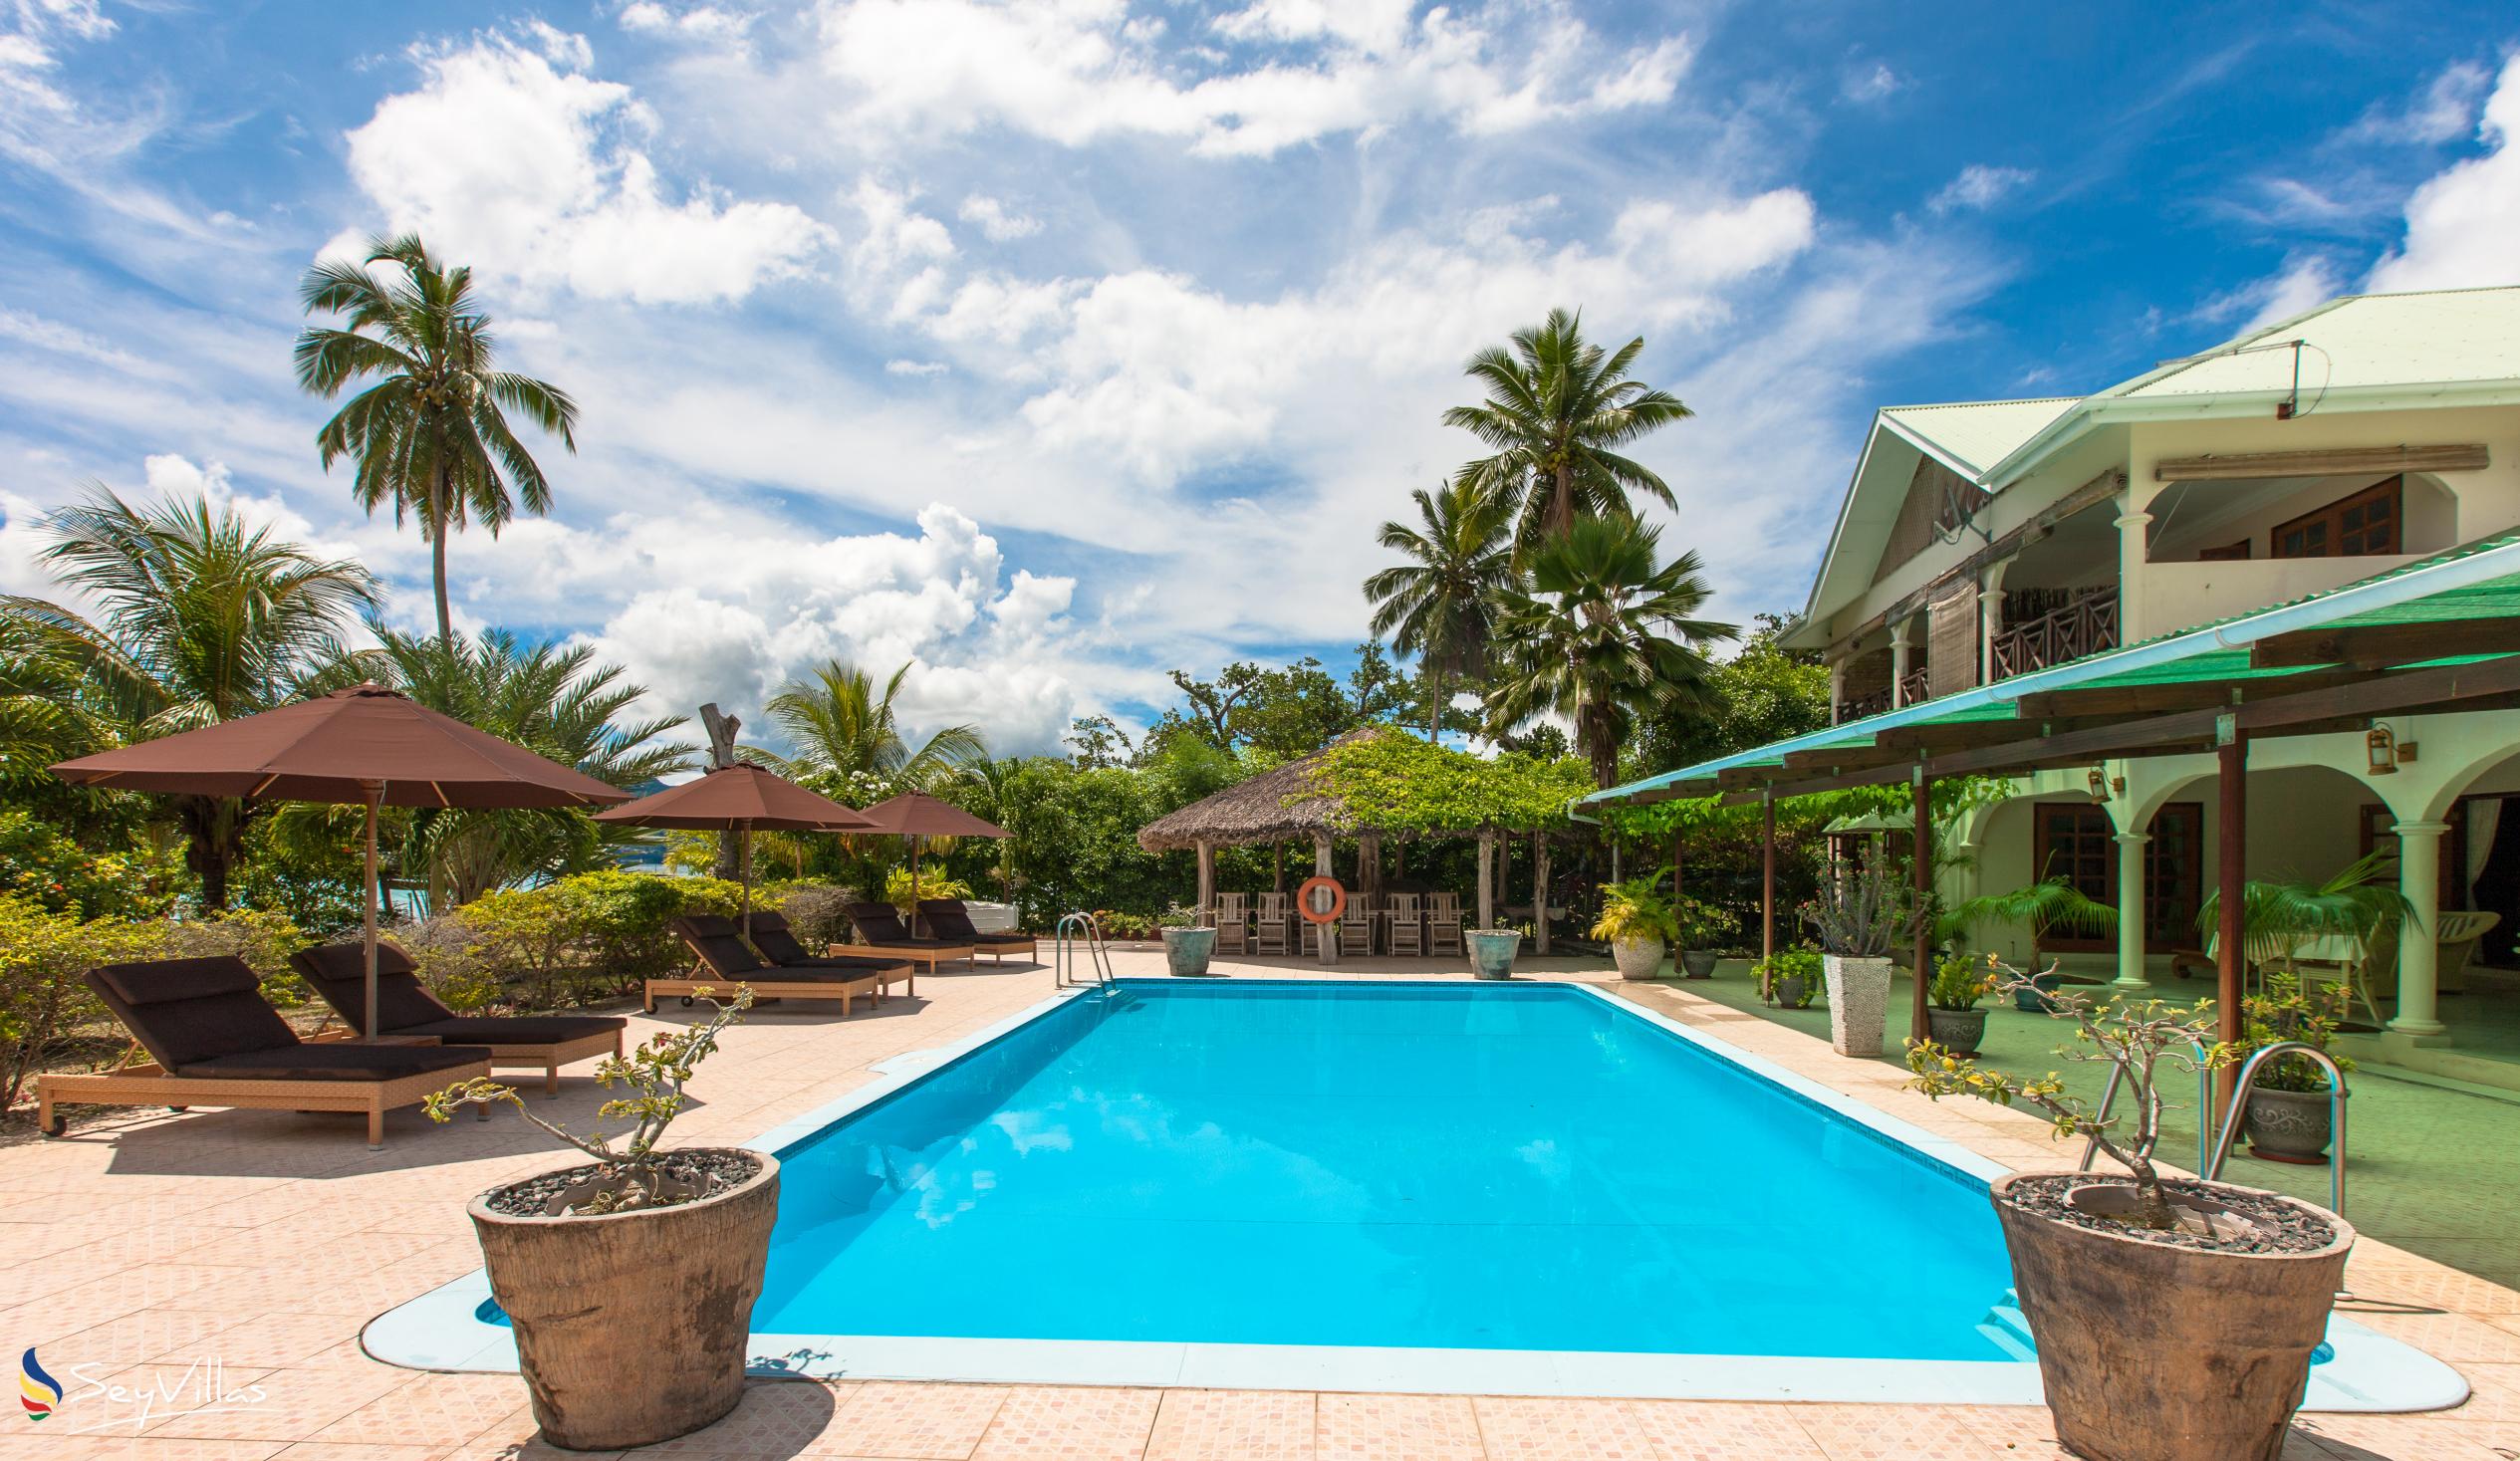 Foto 5: Villa de Cerf - Aussenbereich - Cerf Island (Seychellen)